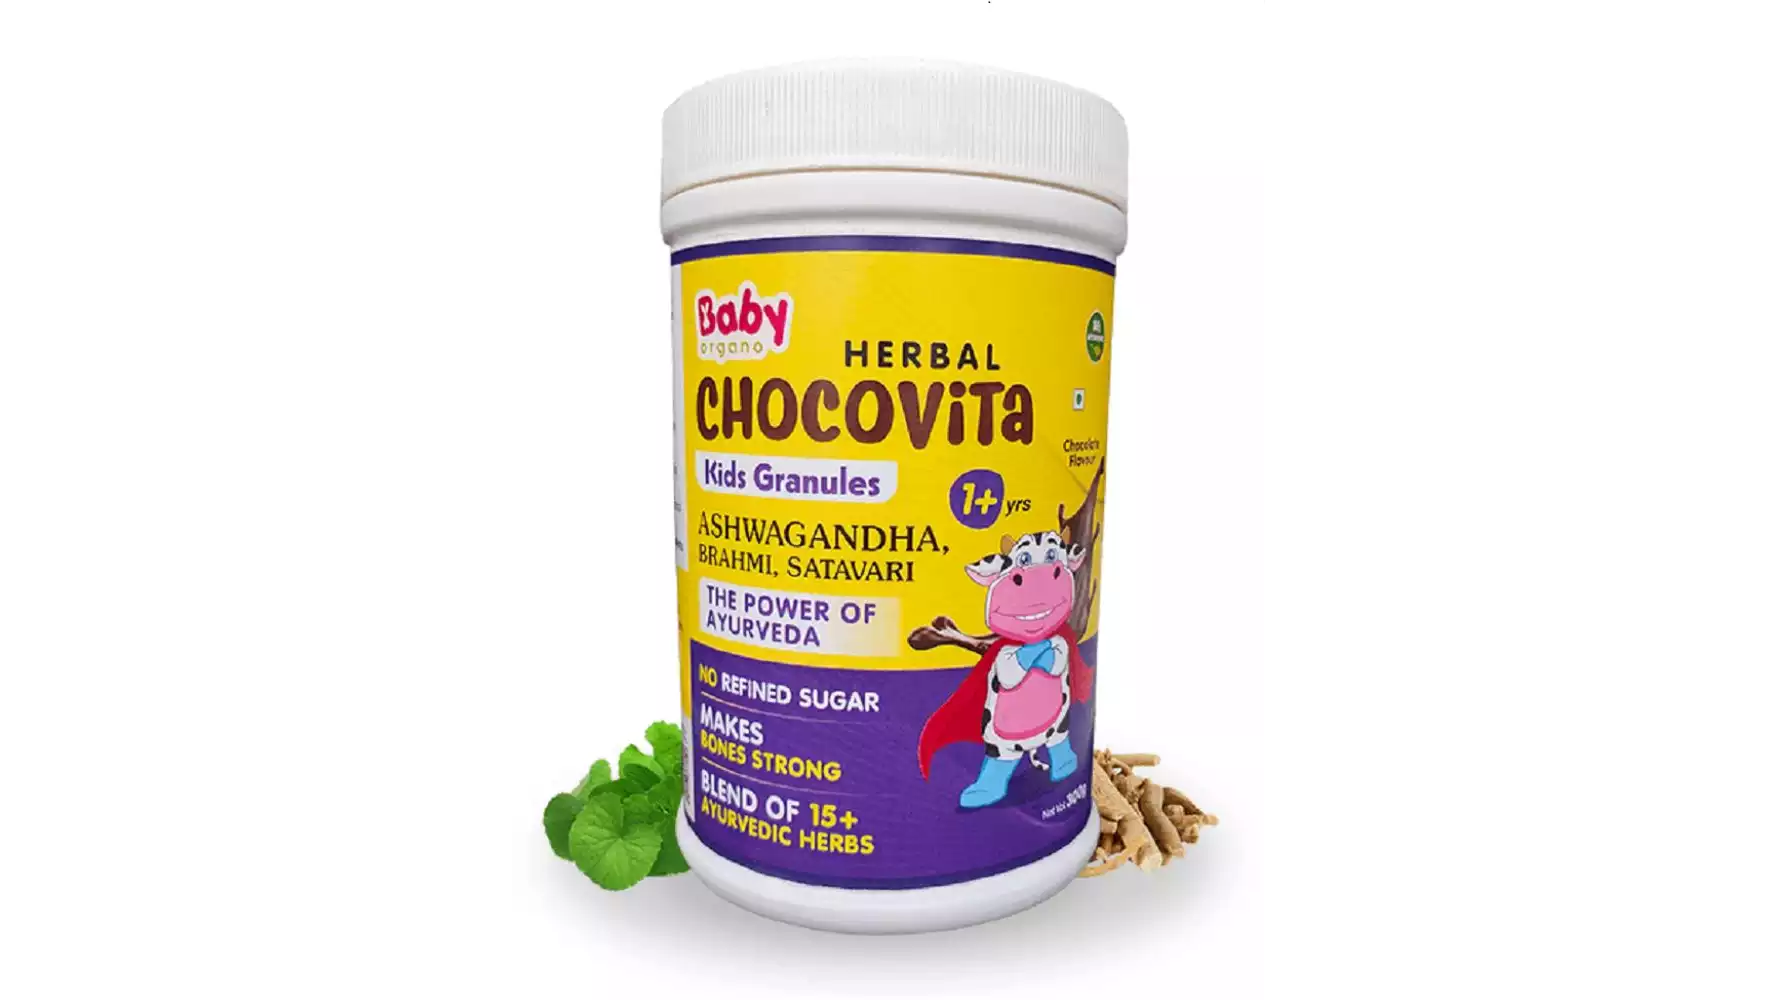 BabyOrgano Herbal Chocovita Kids Granules (300g)